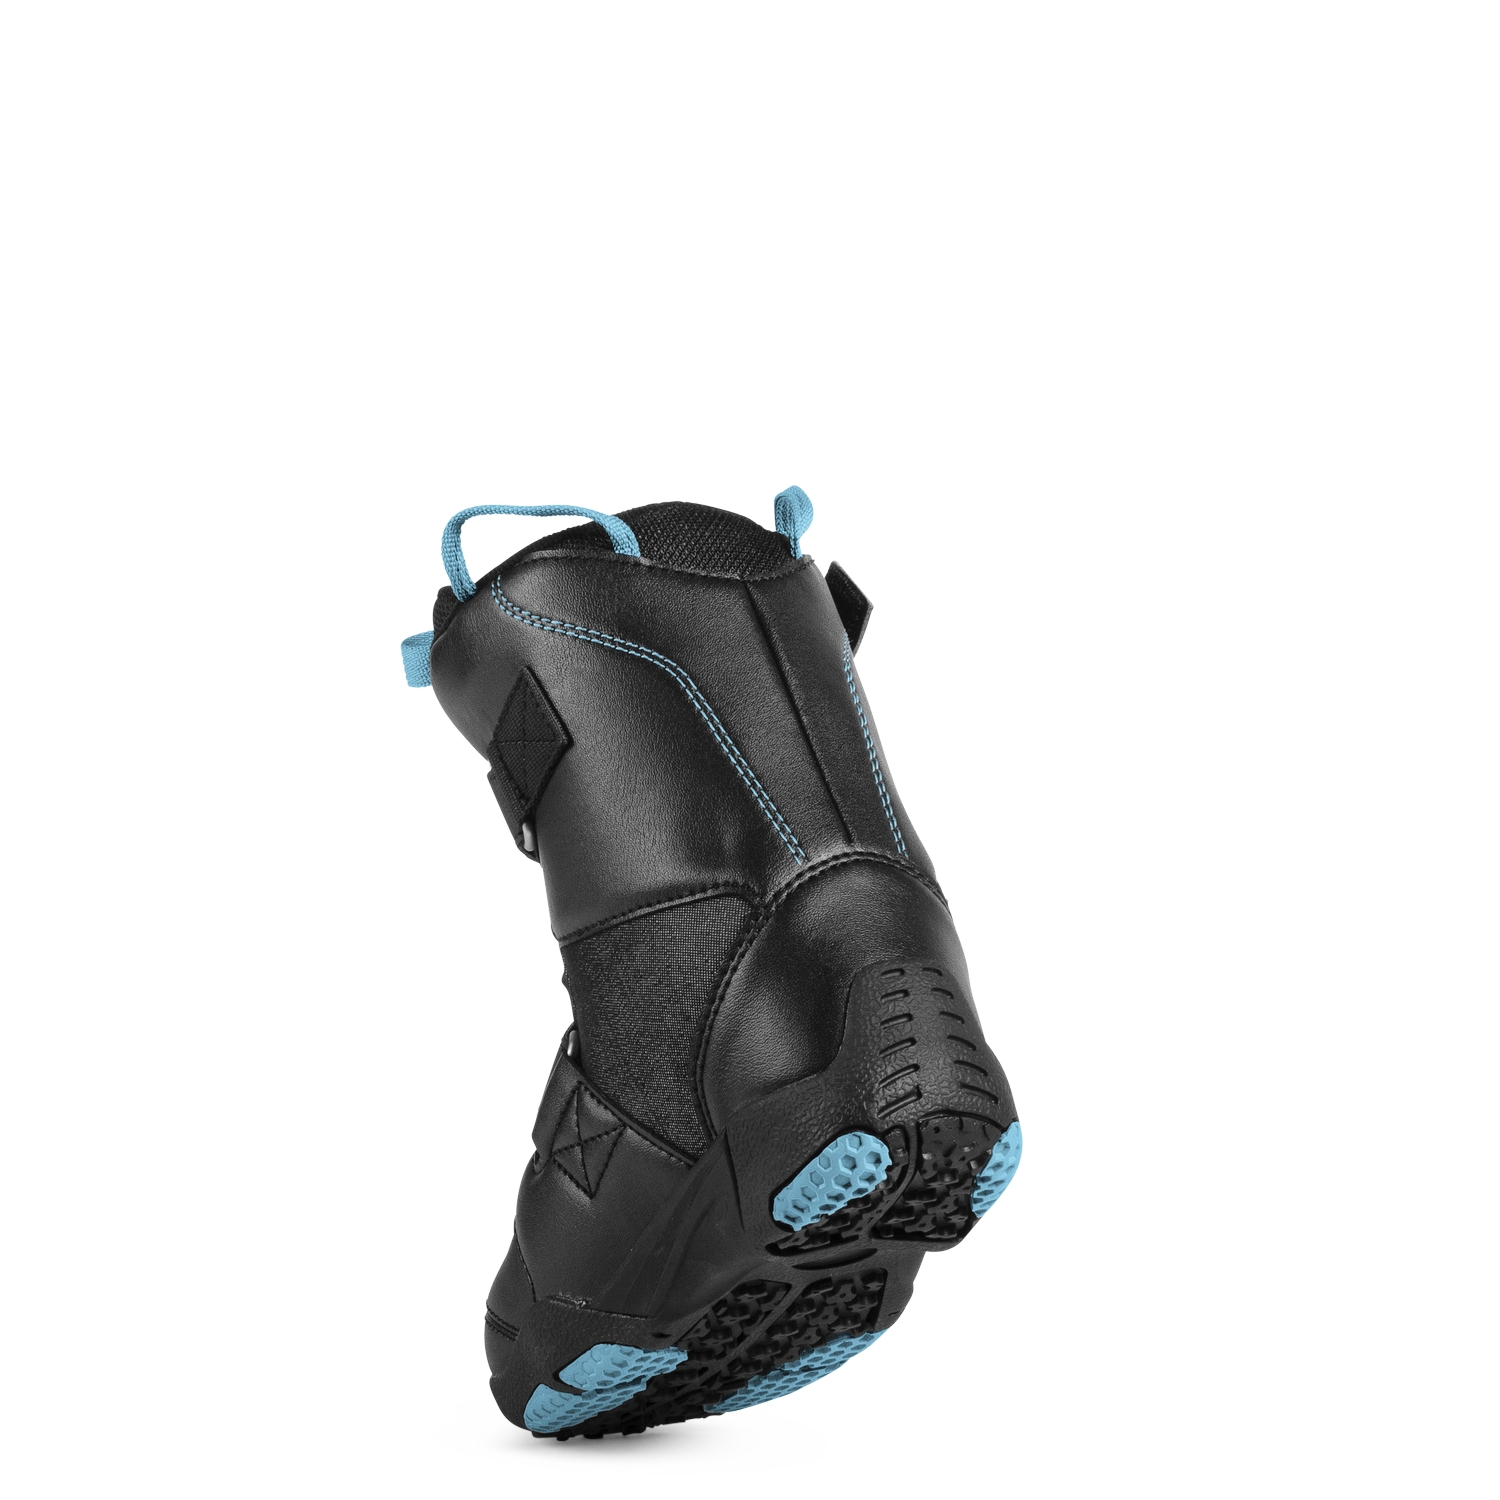 Ботинки для сноуборда NIDECKER 2018-19 Micron Mini Black